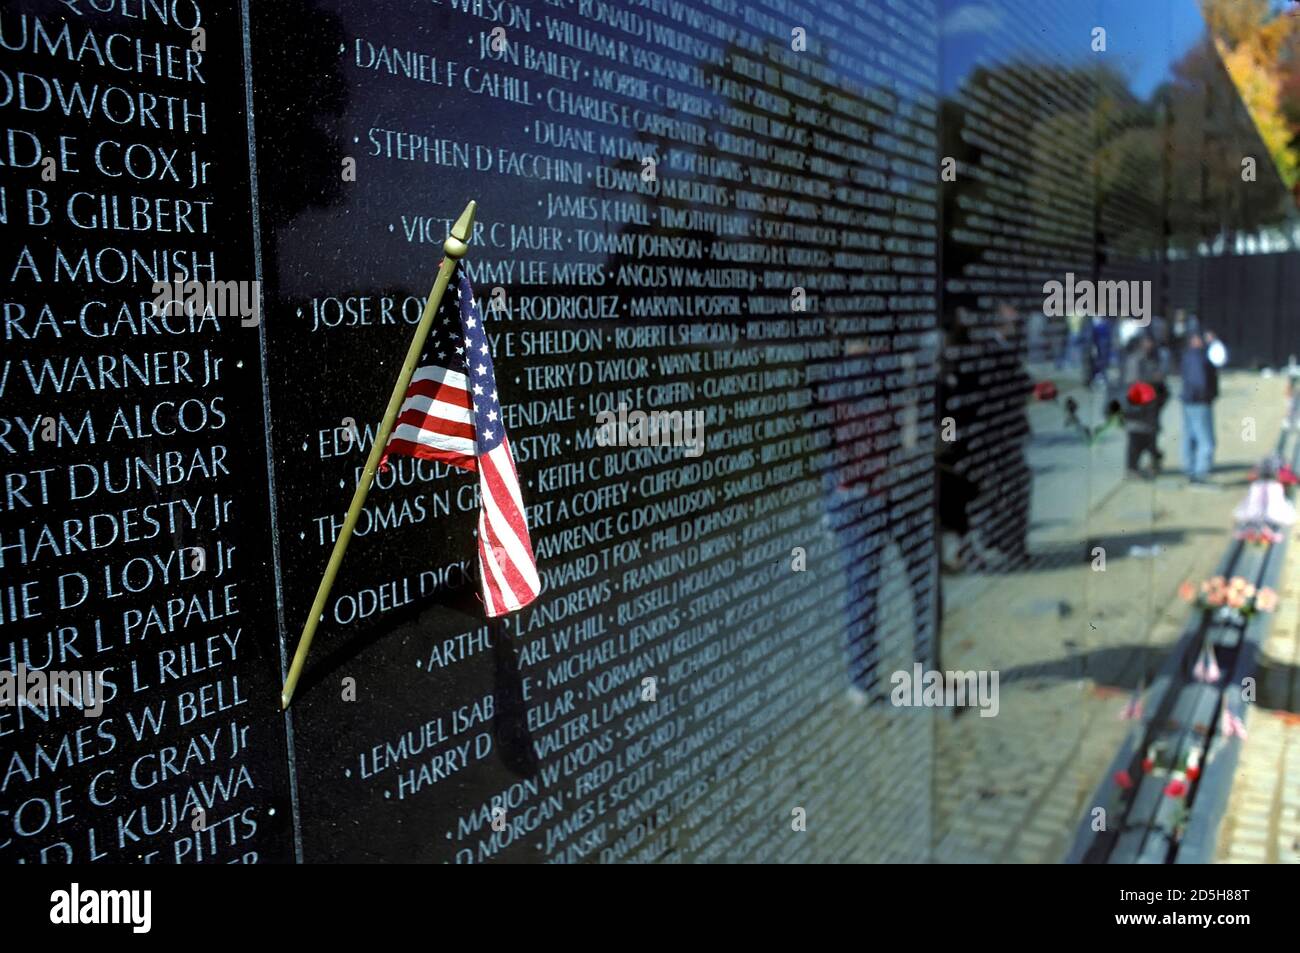 The Viet Nam War Memorial at Washington D.C. Stock Photo